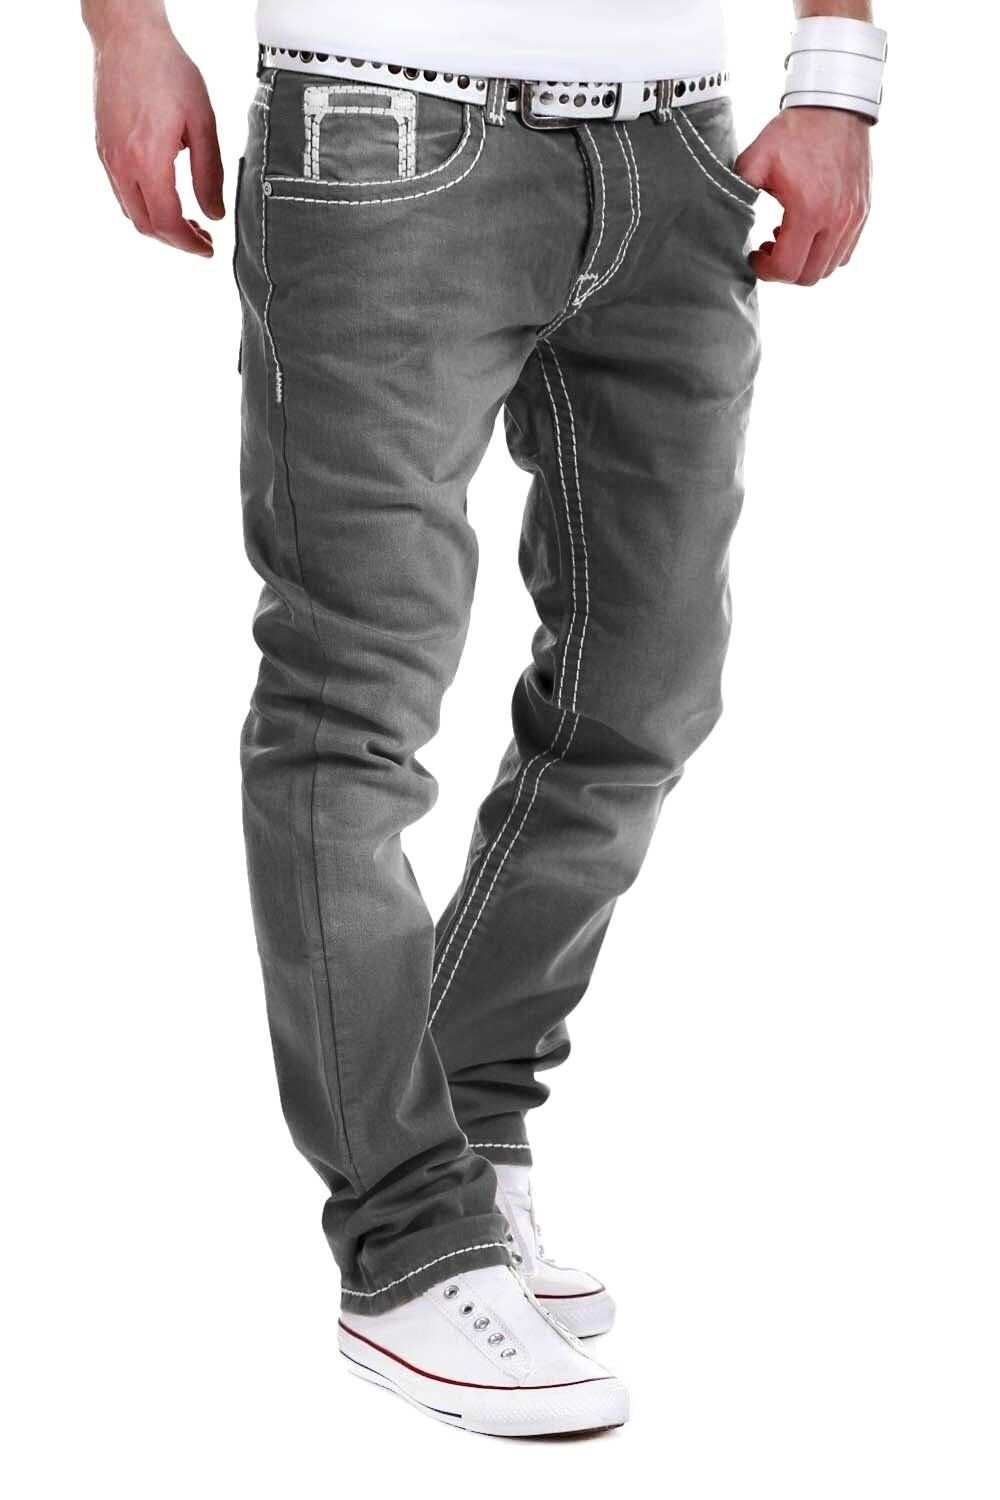 behype Bequeme Jeans Stitch mit grau dicken Kontrastnähten